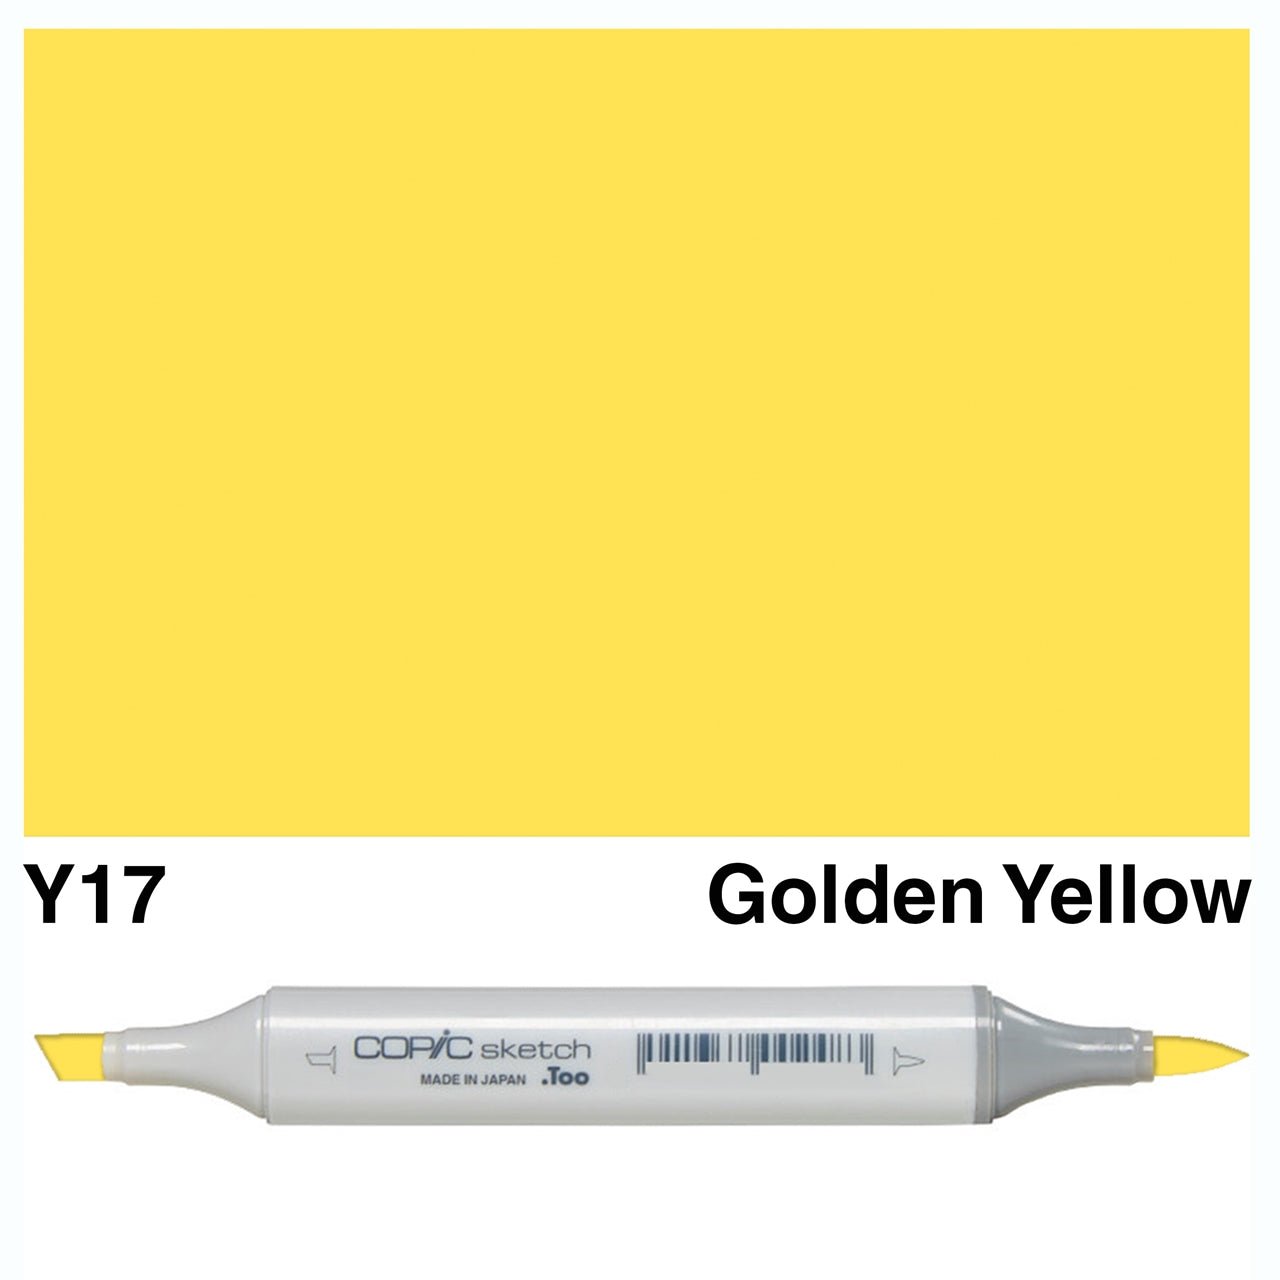 Copic Sketch Y17 Golden Yellow - theartshop.com.au